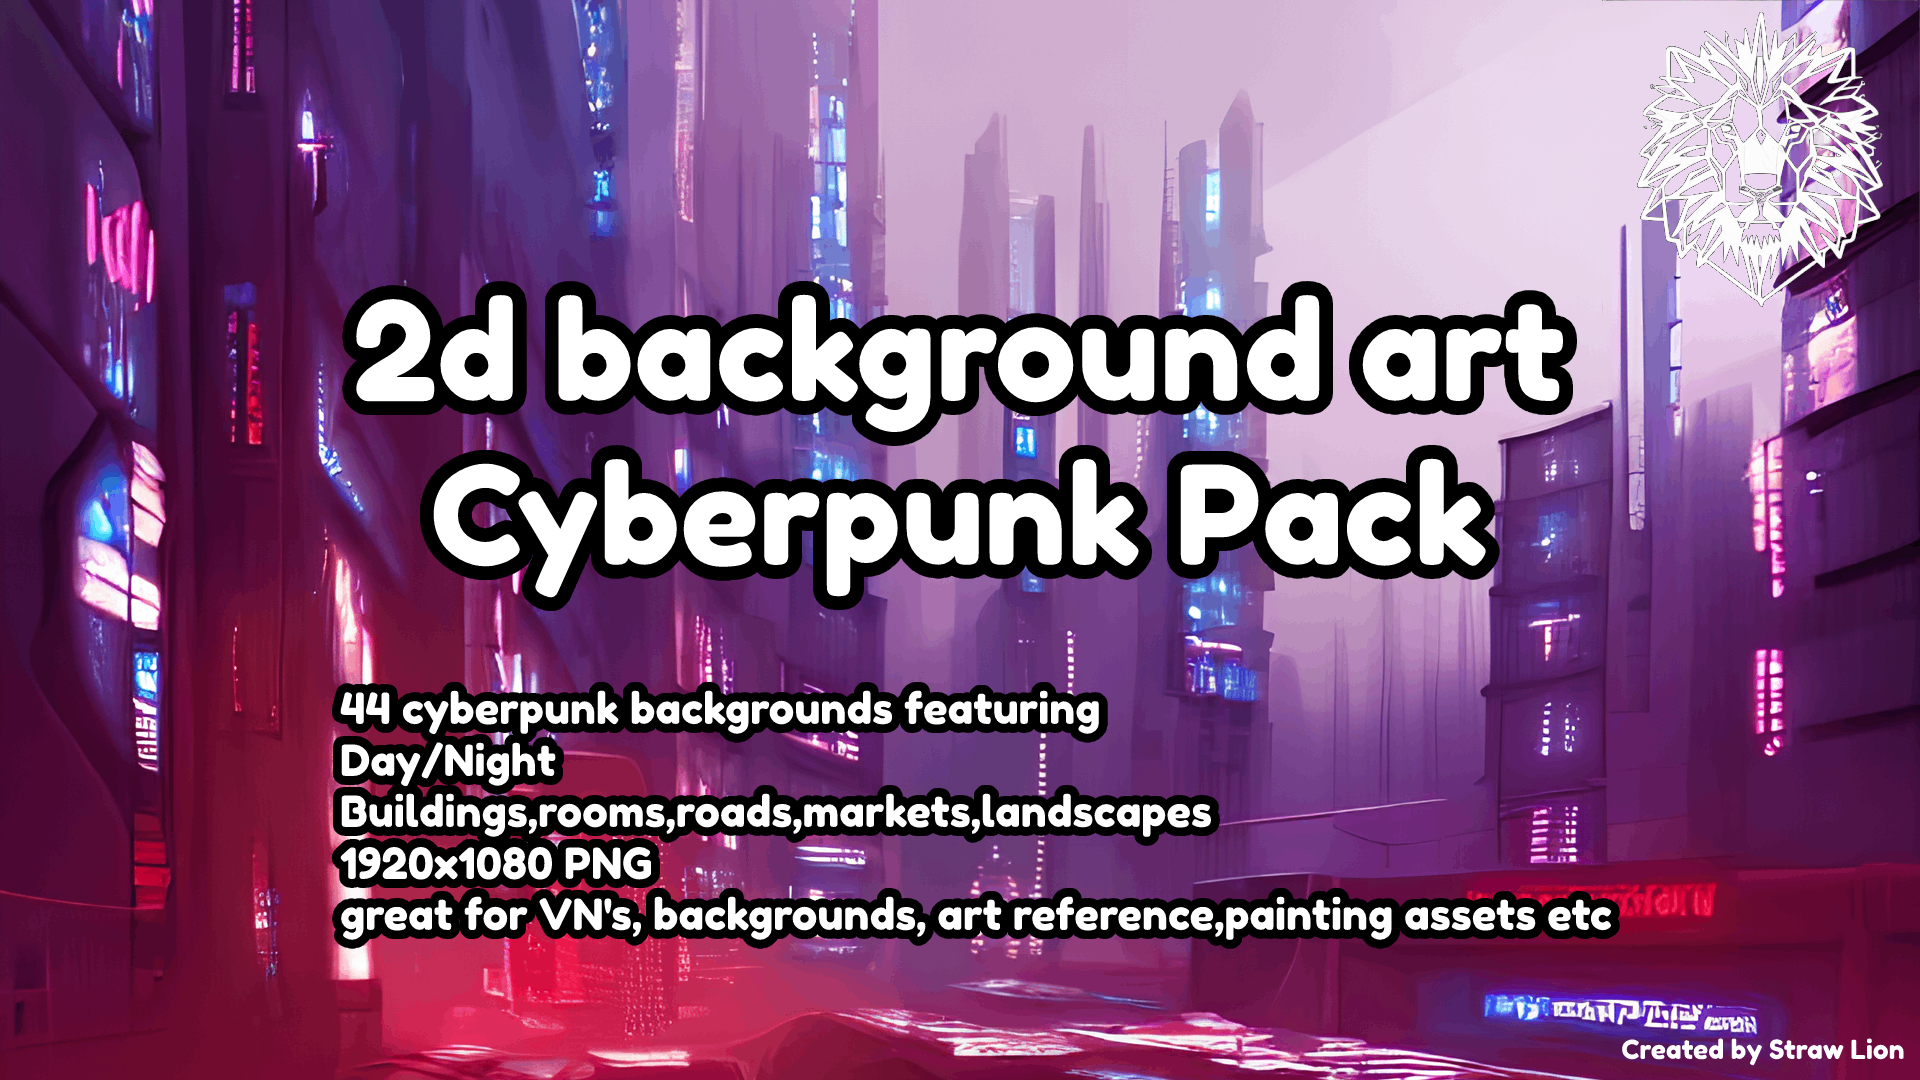 Cyberpunk Pack Backgrounds 2d Art Pack